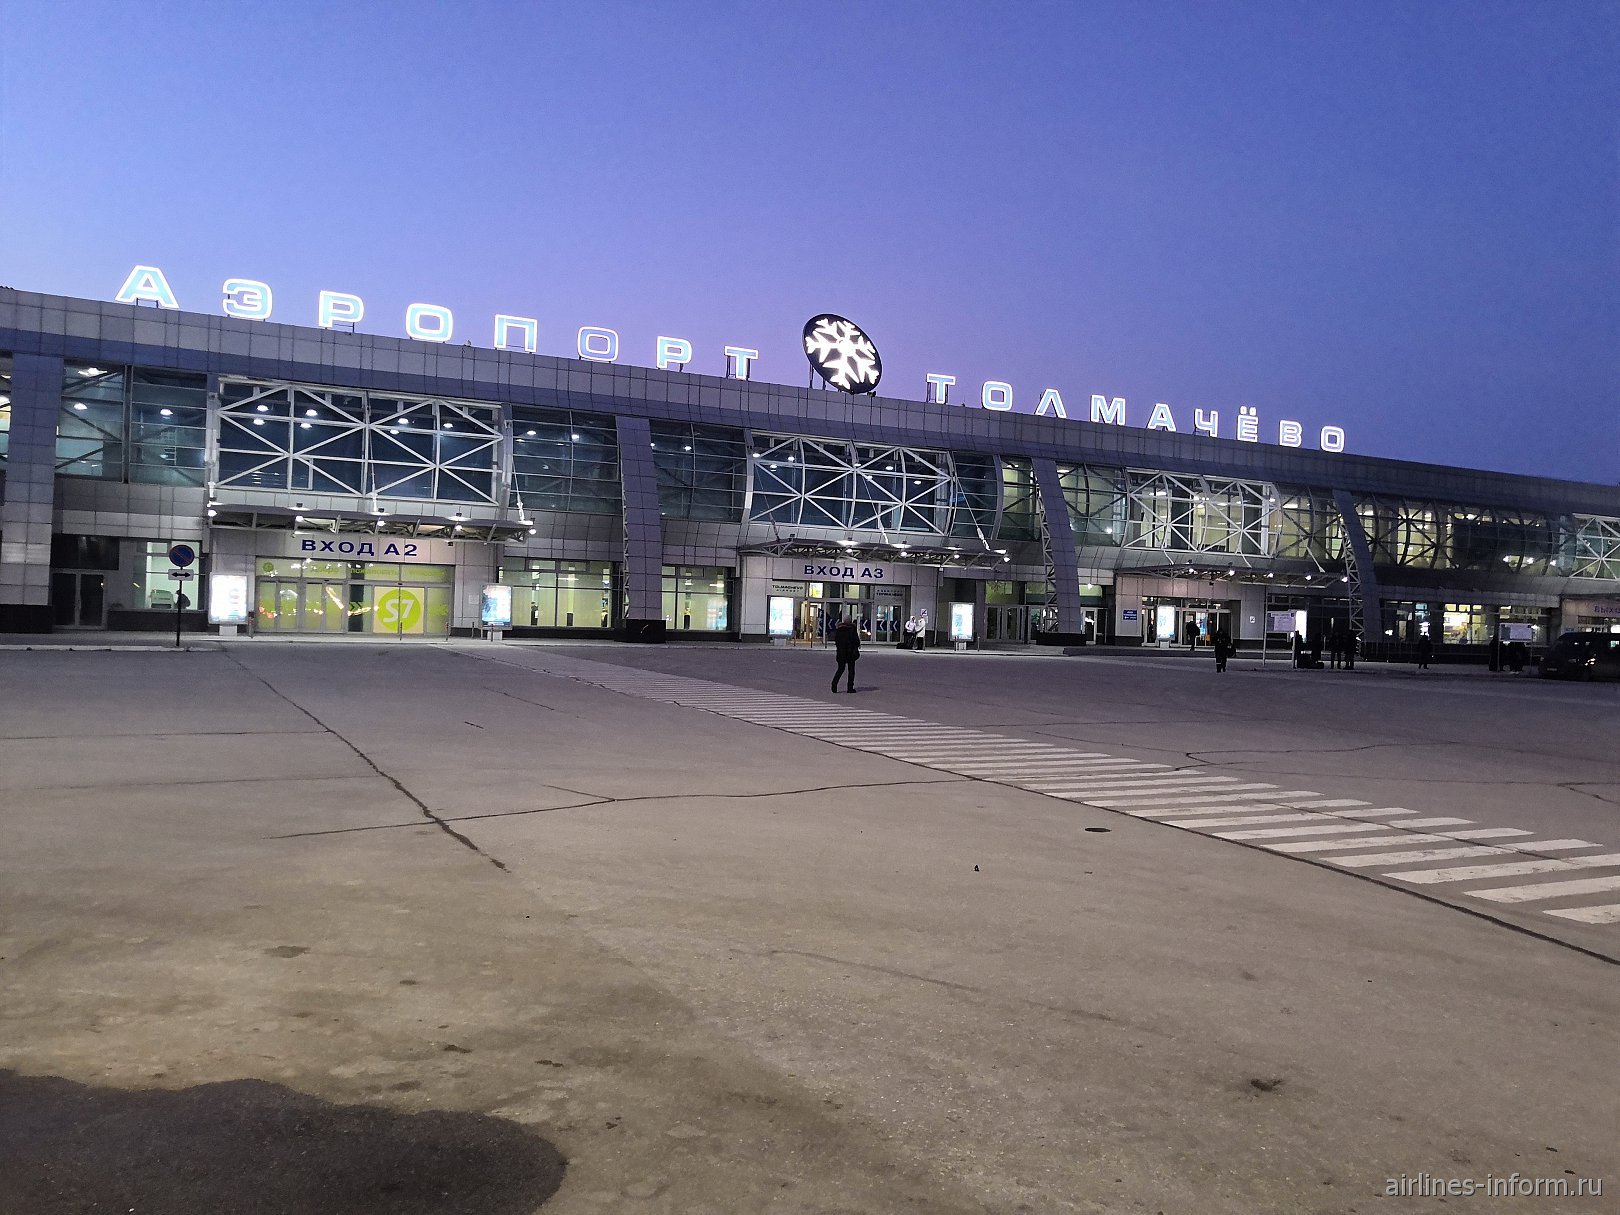 Новосибирск аэропорт центр. Толмачева аэропорт Новосибирск. Аэропорт Толмачево Новосибирск терминал а. Терминал а Толмачева Новосибирск. Толмачева аэропорт Новосибирск внутри.